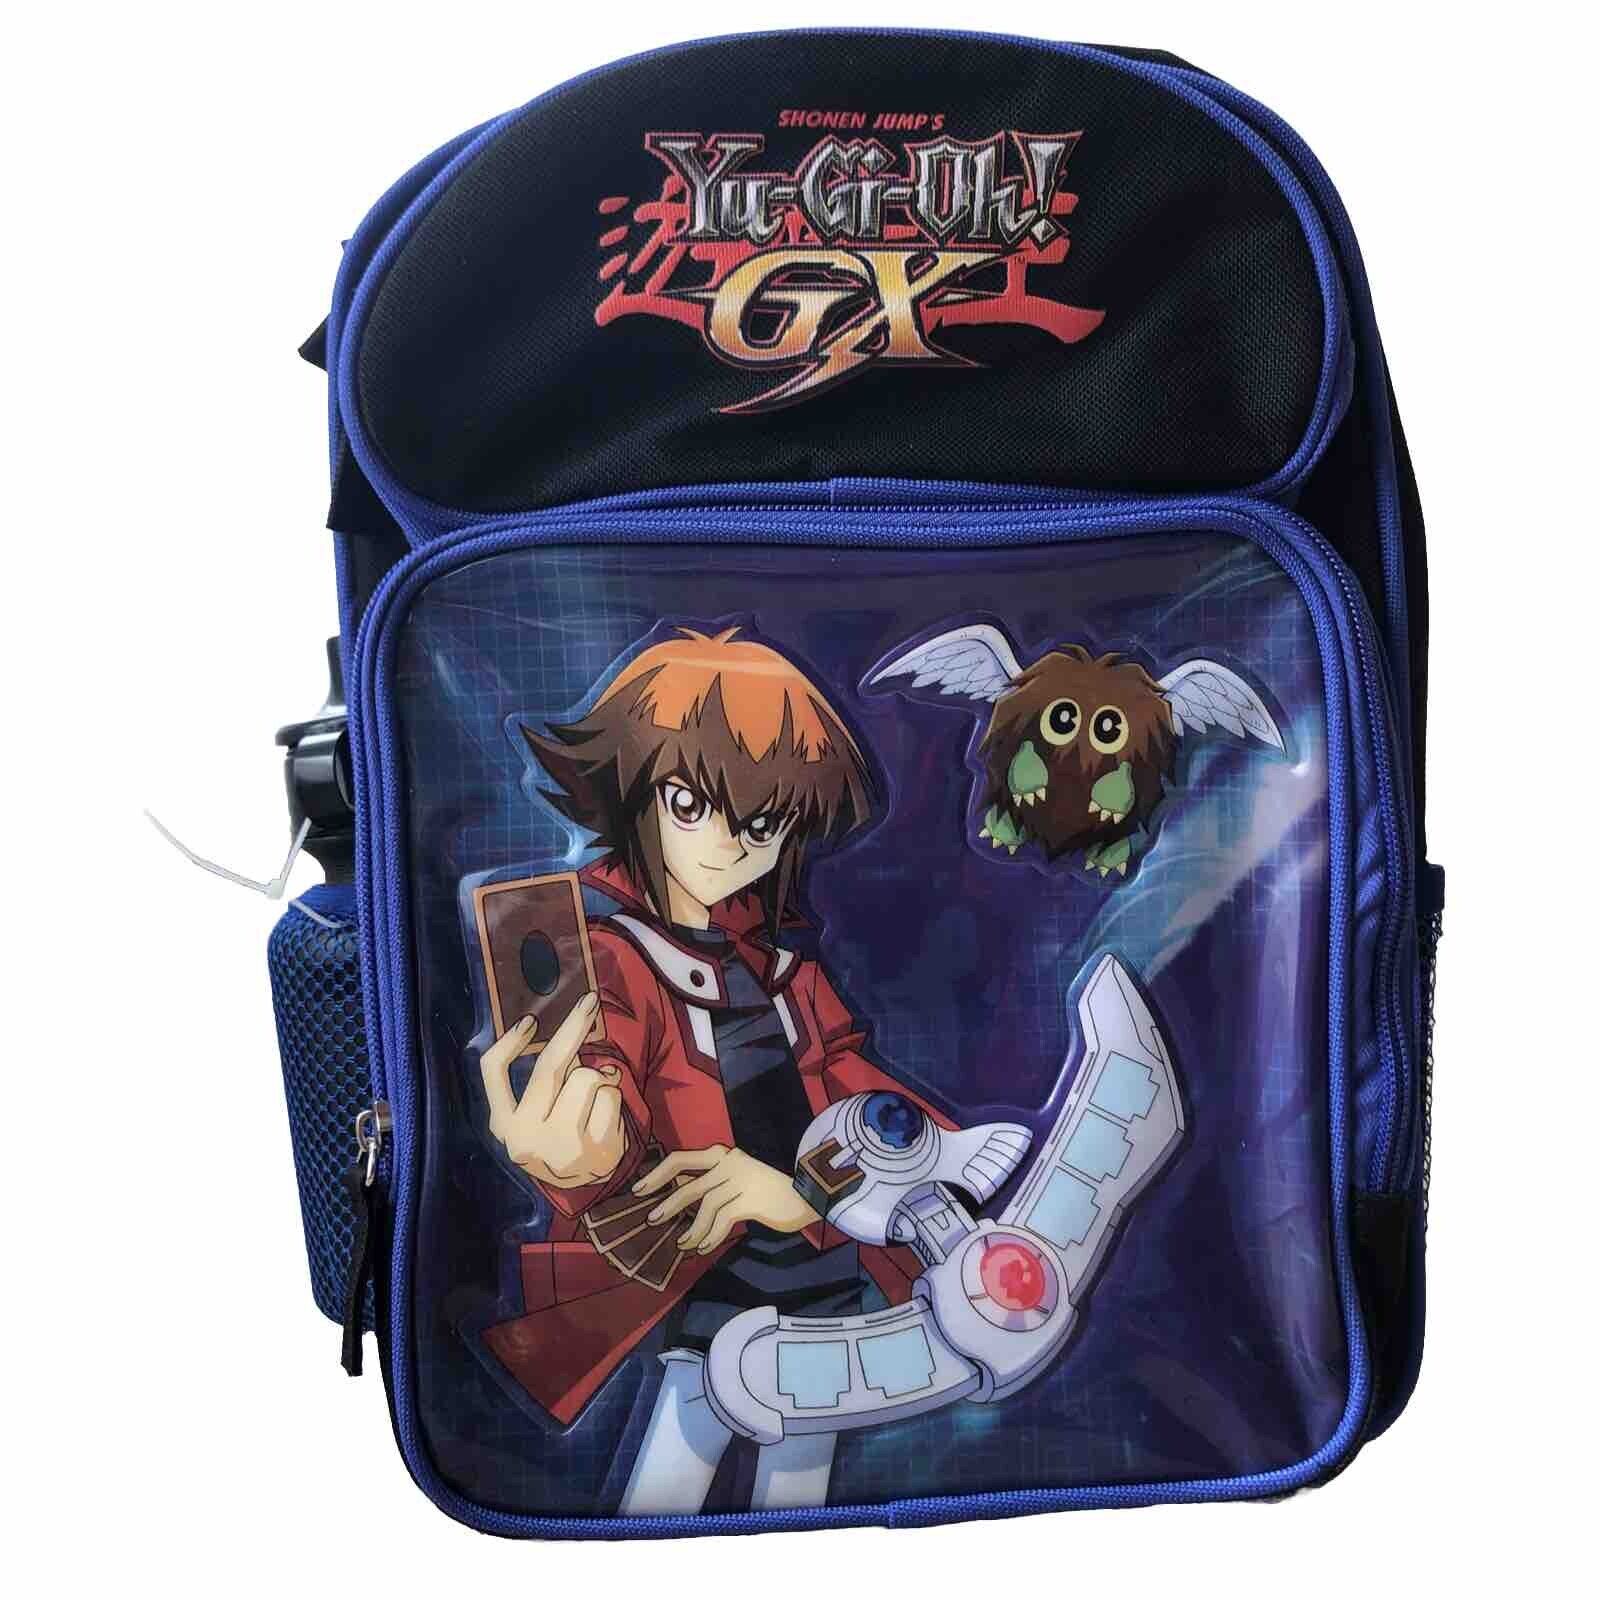 New Yu-Gi-Oh GX Childrens Small Mini Backpack Blue Black kuriboh Anime 12\